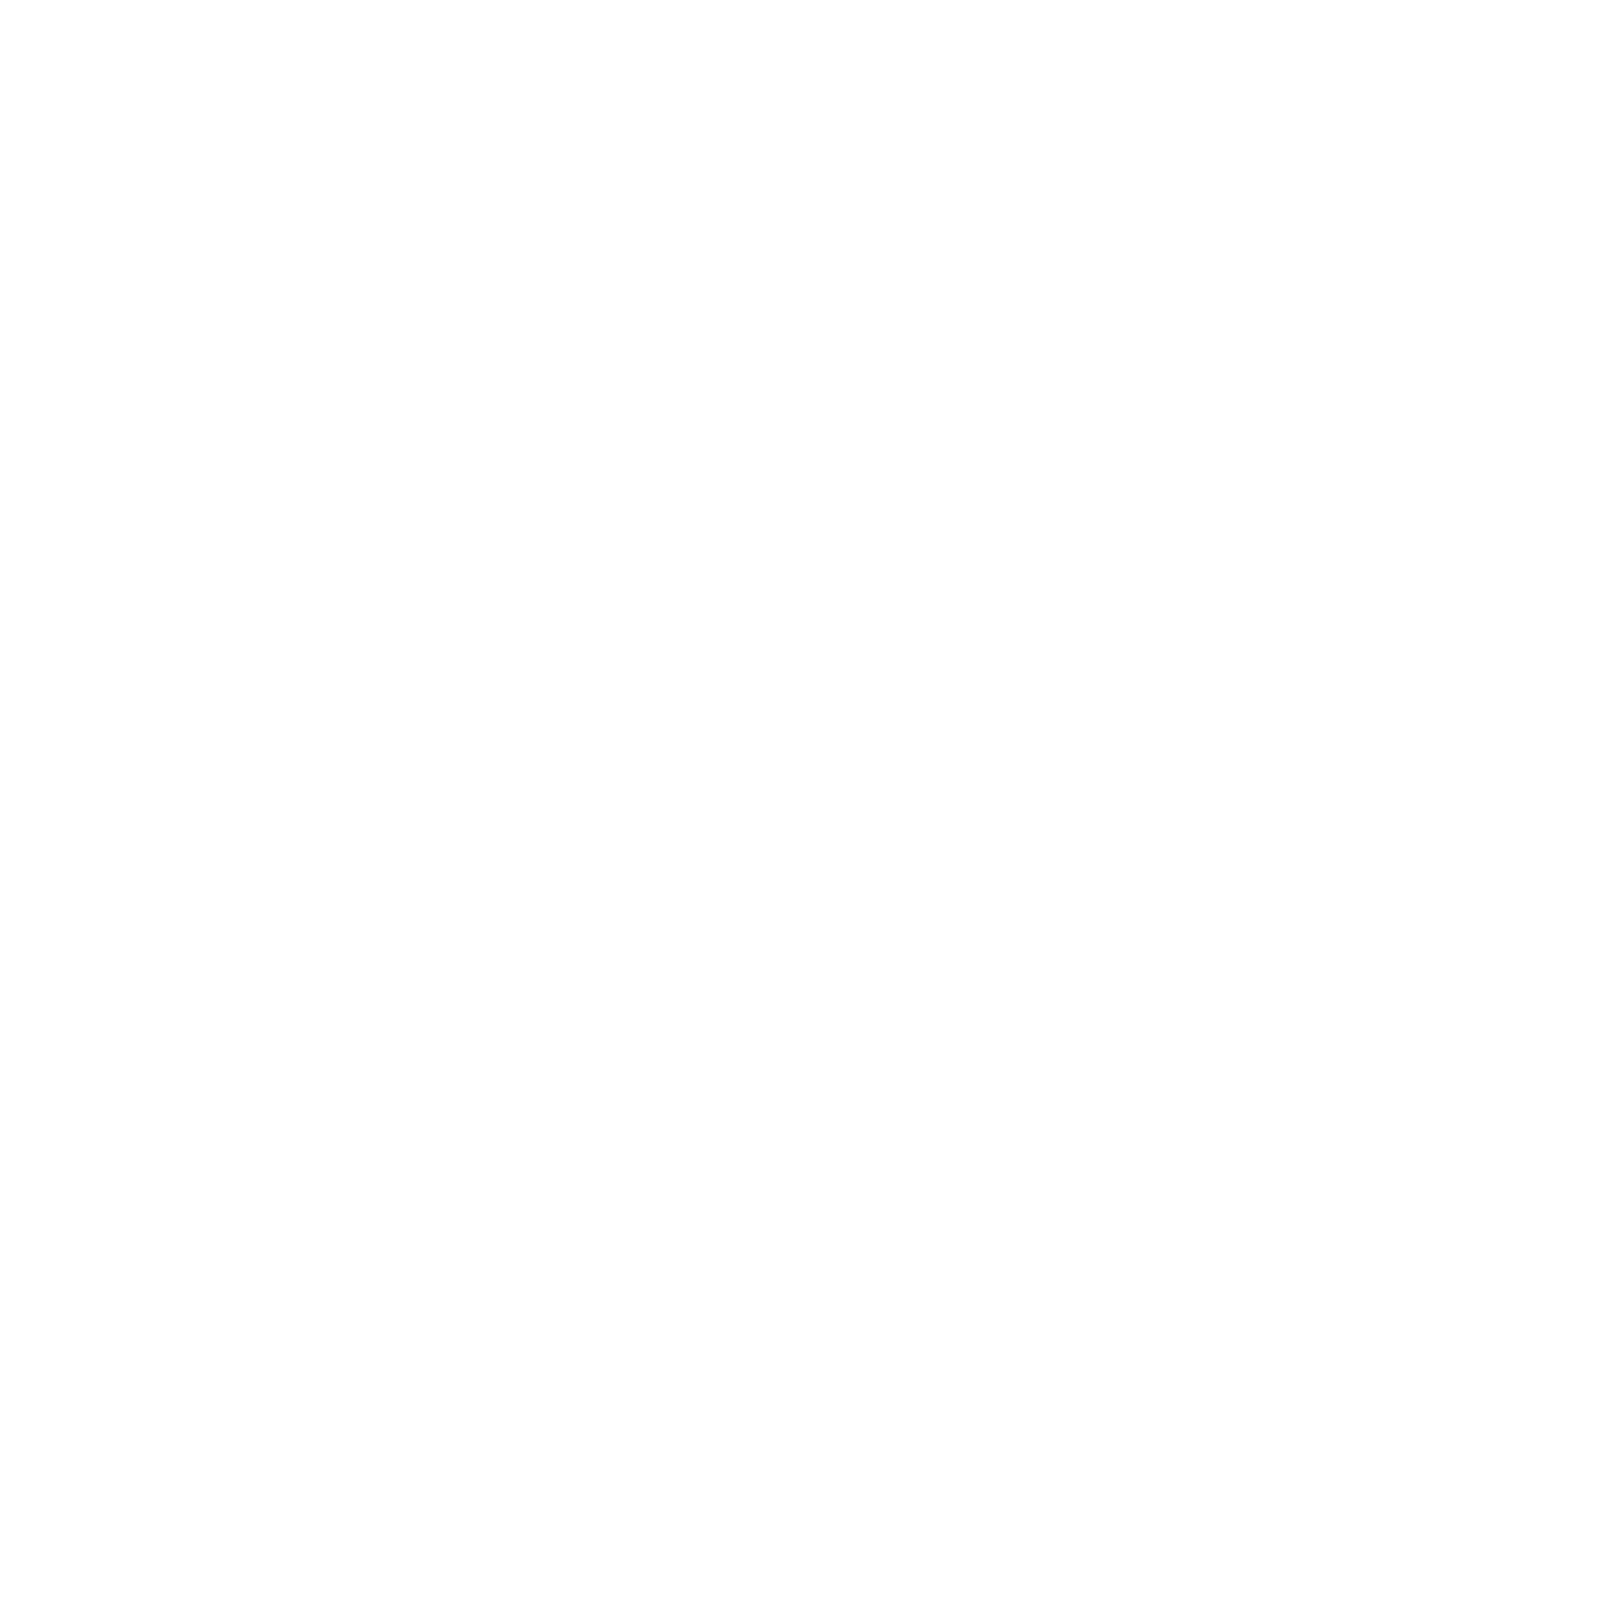 Drew Vaughan \\ Director